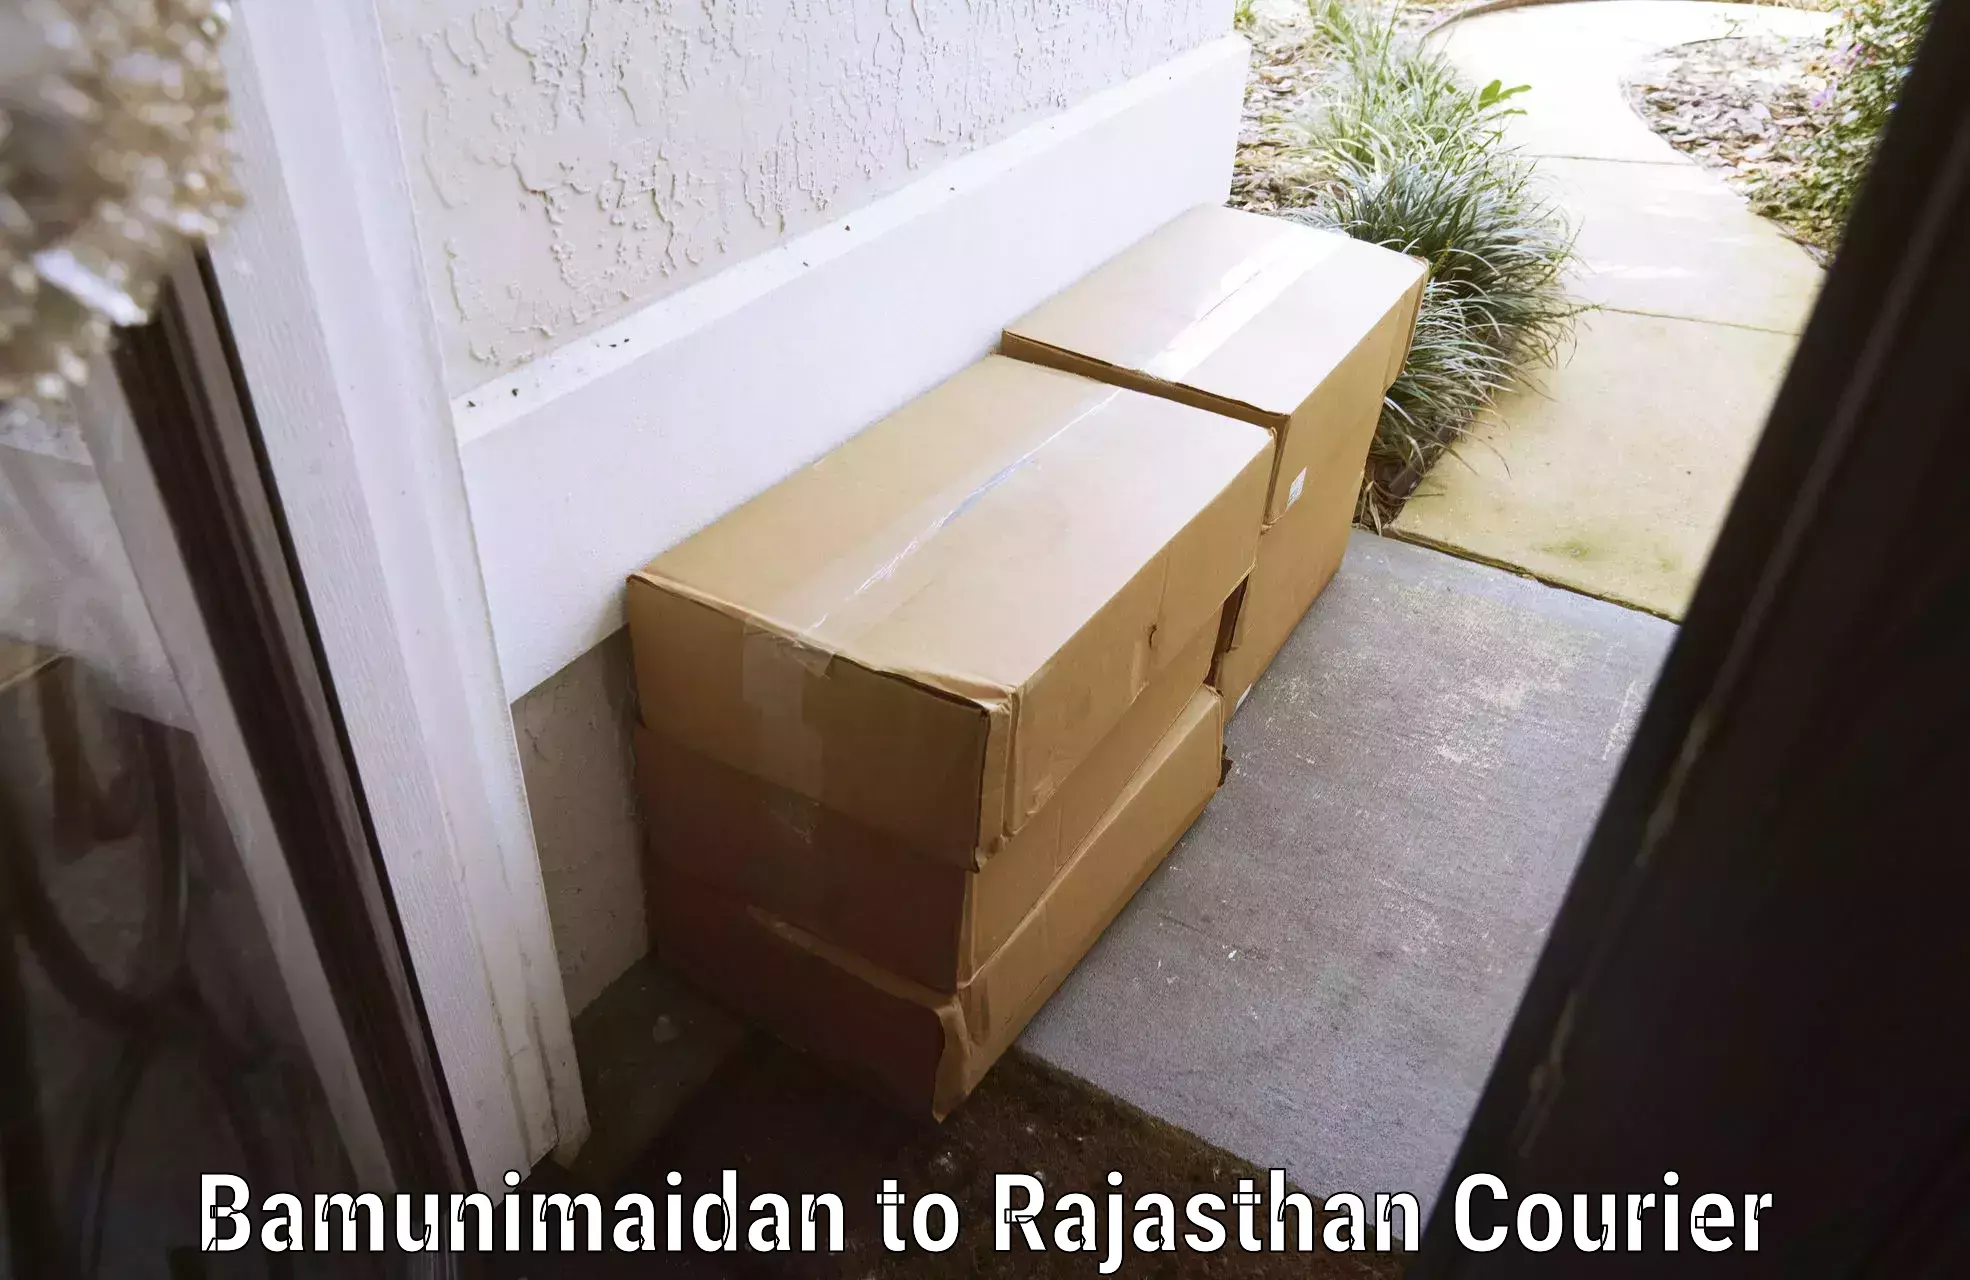 Baggage delivery scheduling Bamunimaidan to Pratapgarh Rajasthan